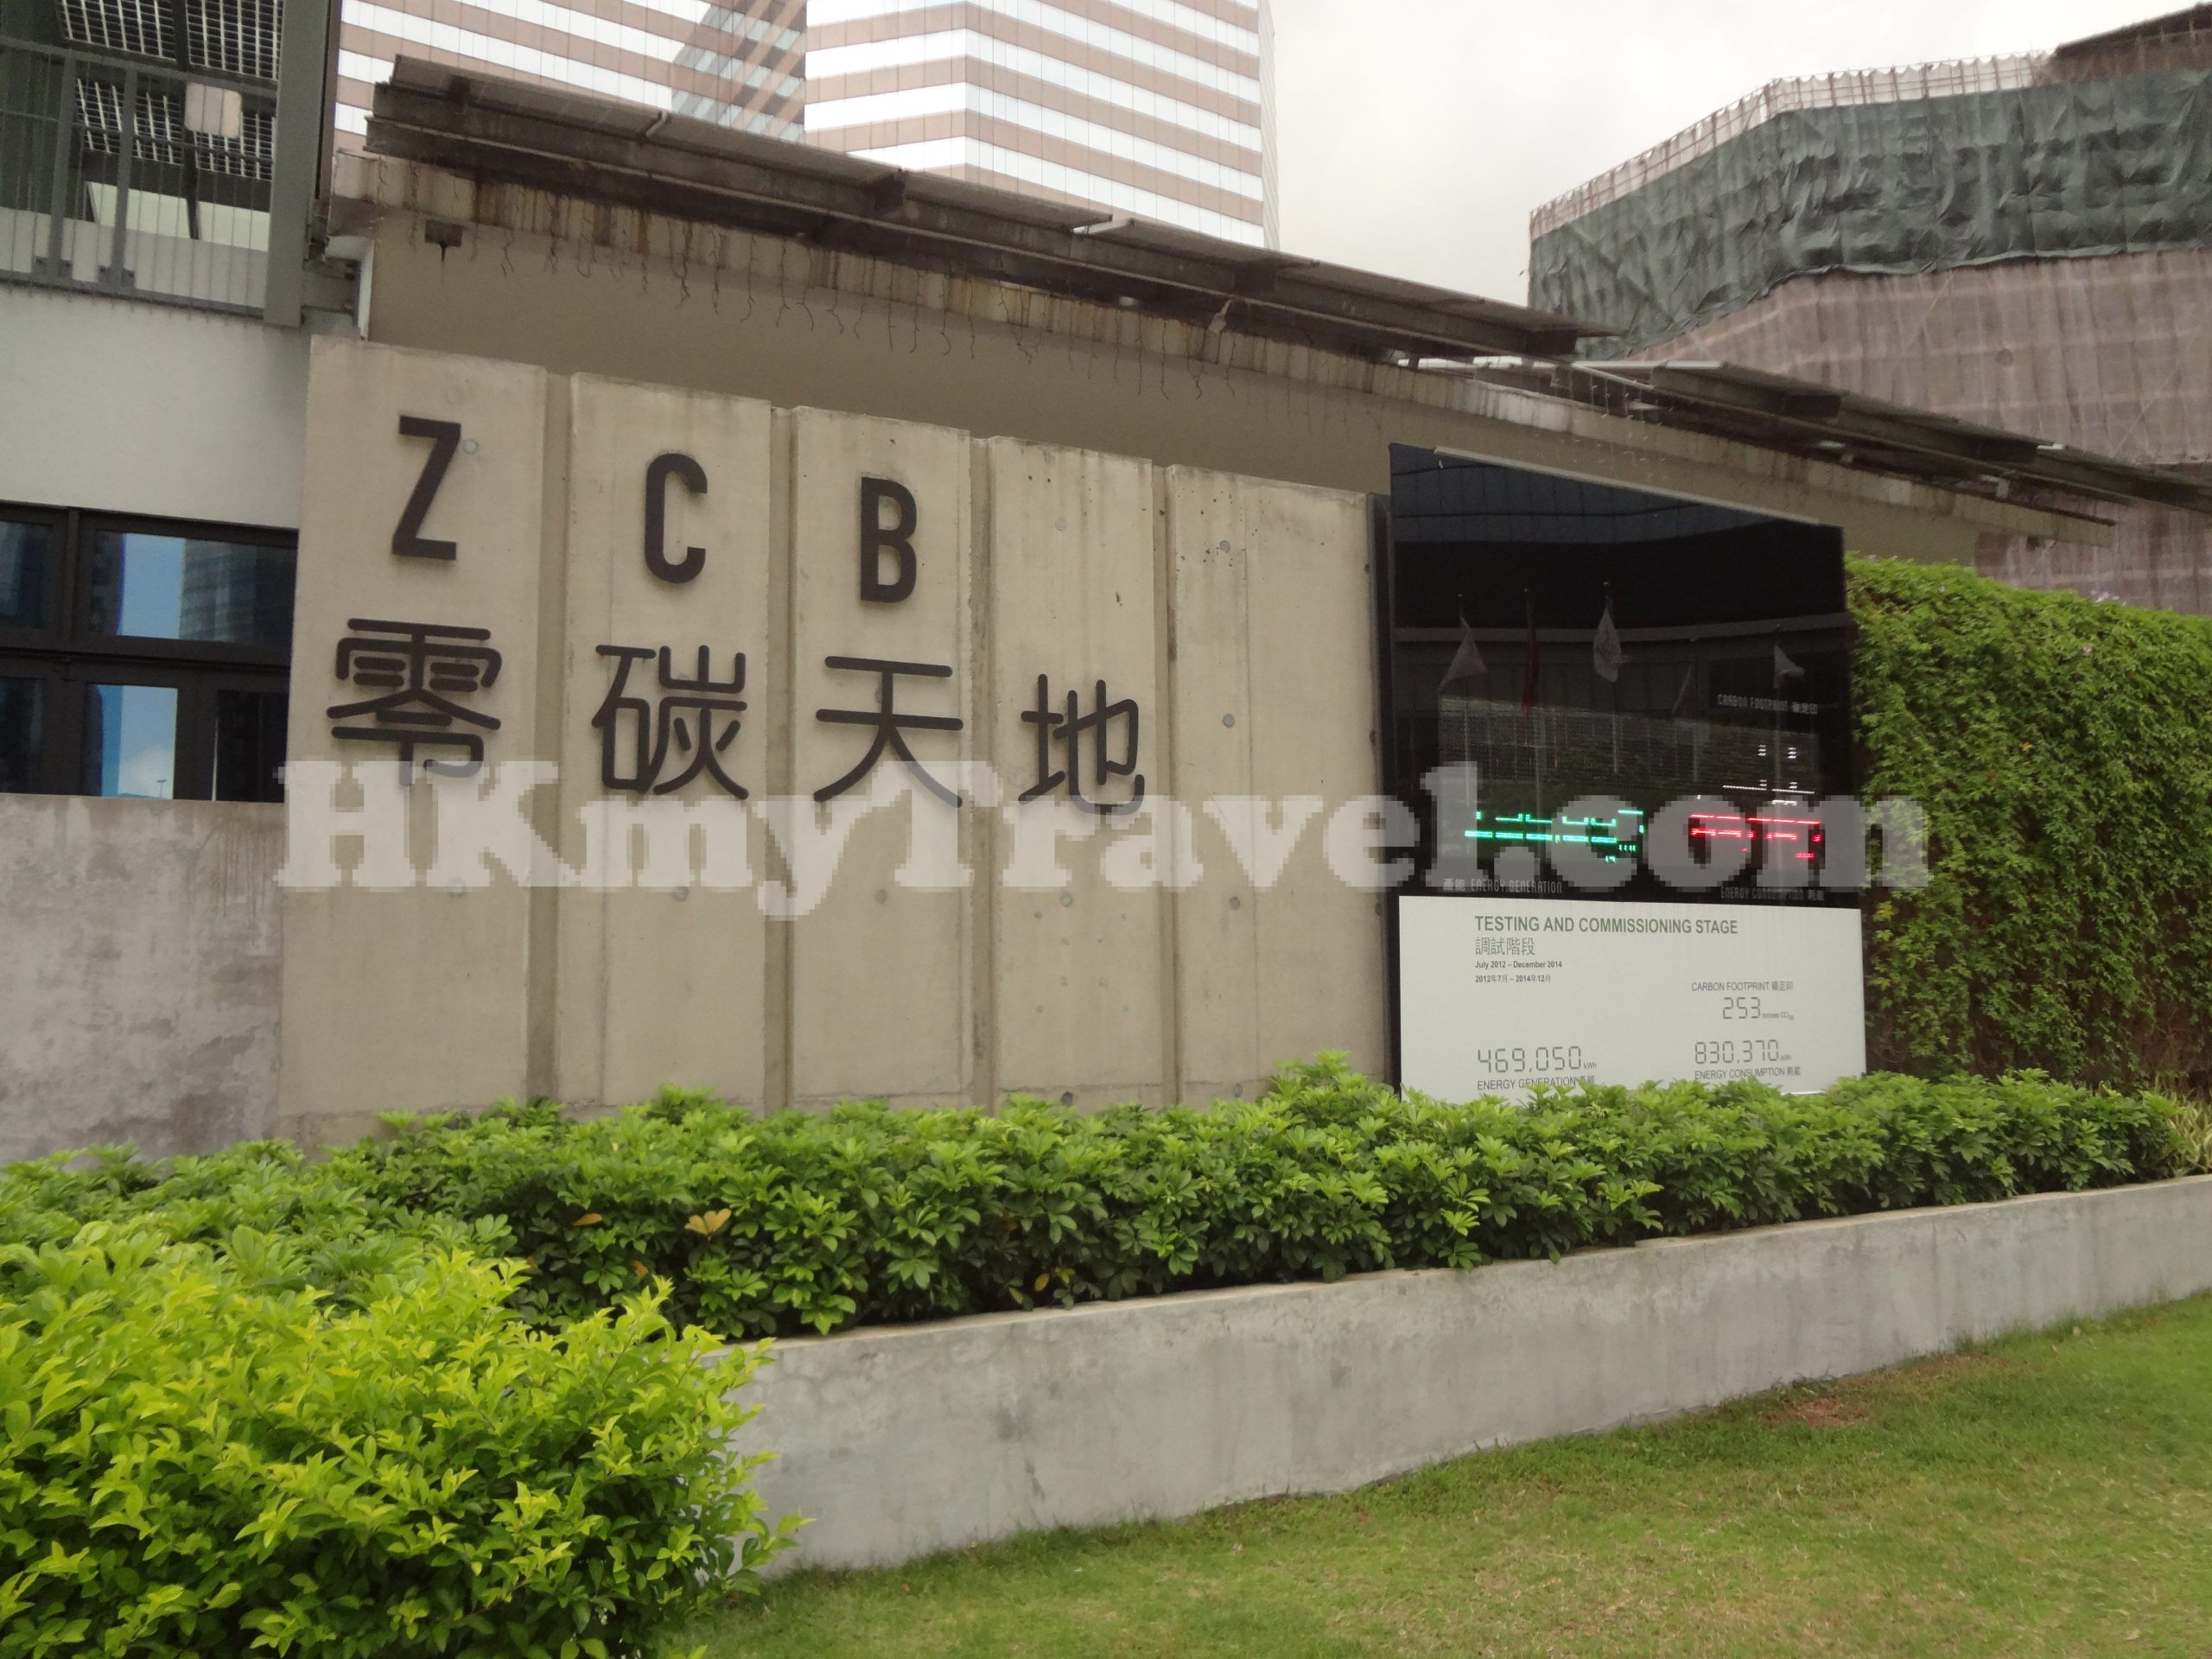 ZCB Zero Carbon Building